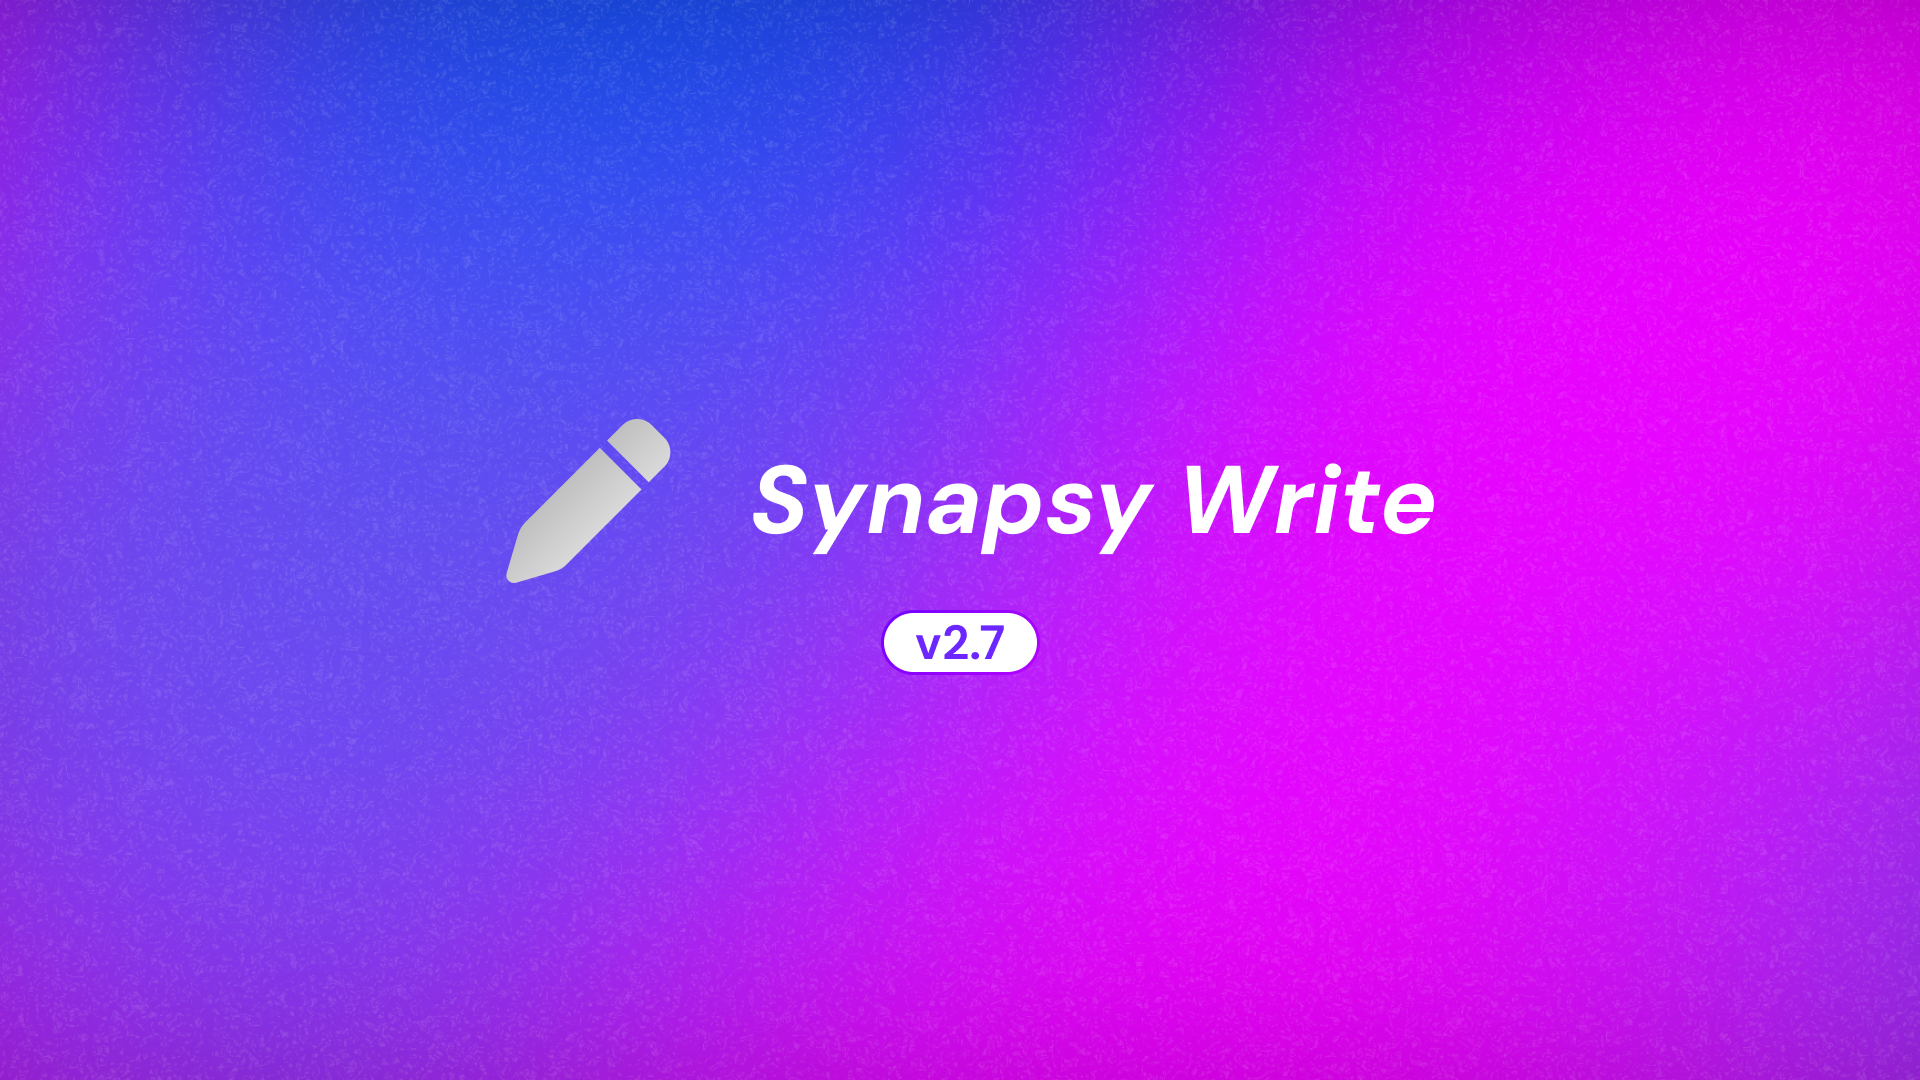 Synapsy Write v2.7.0 Changelog